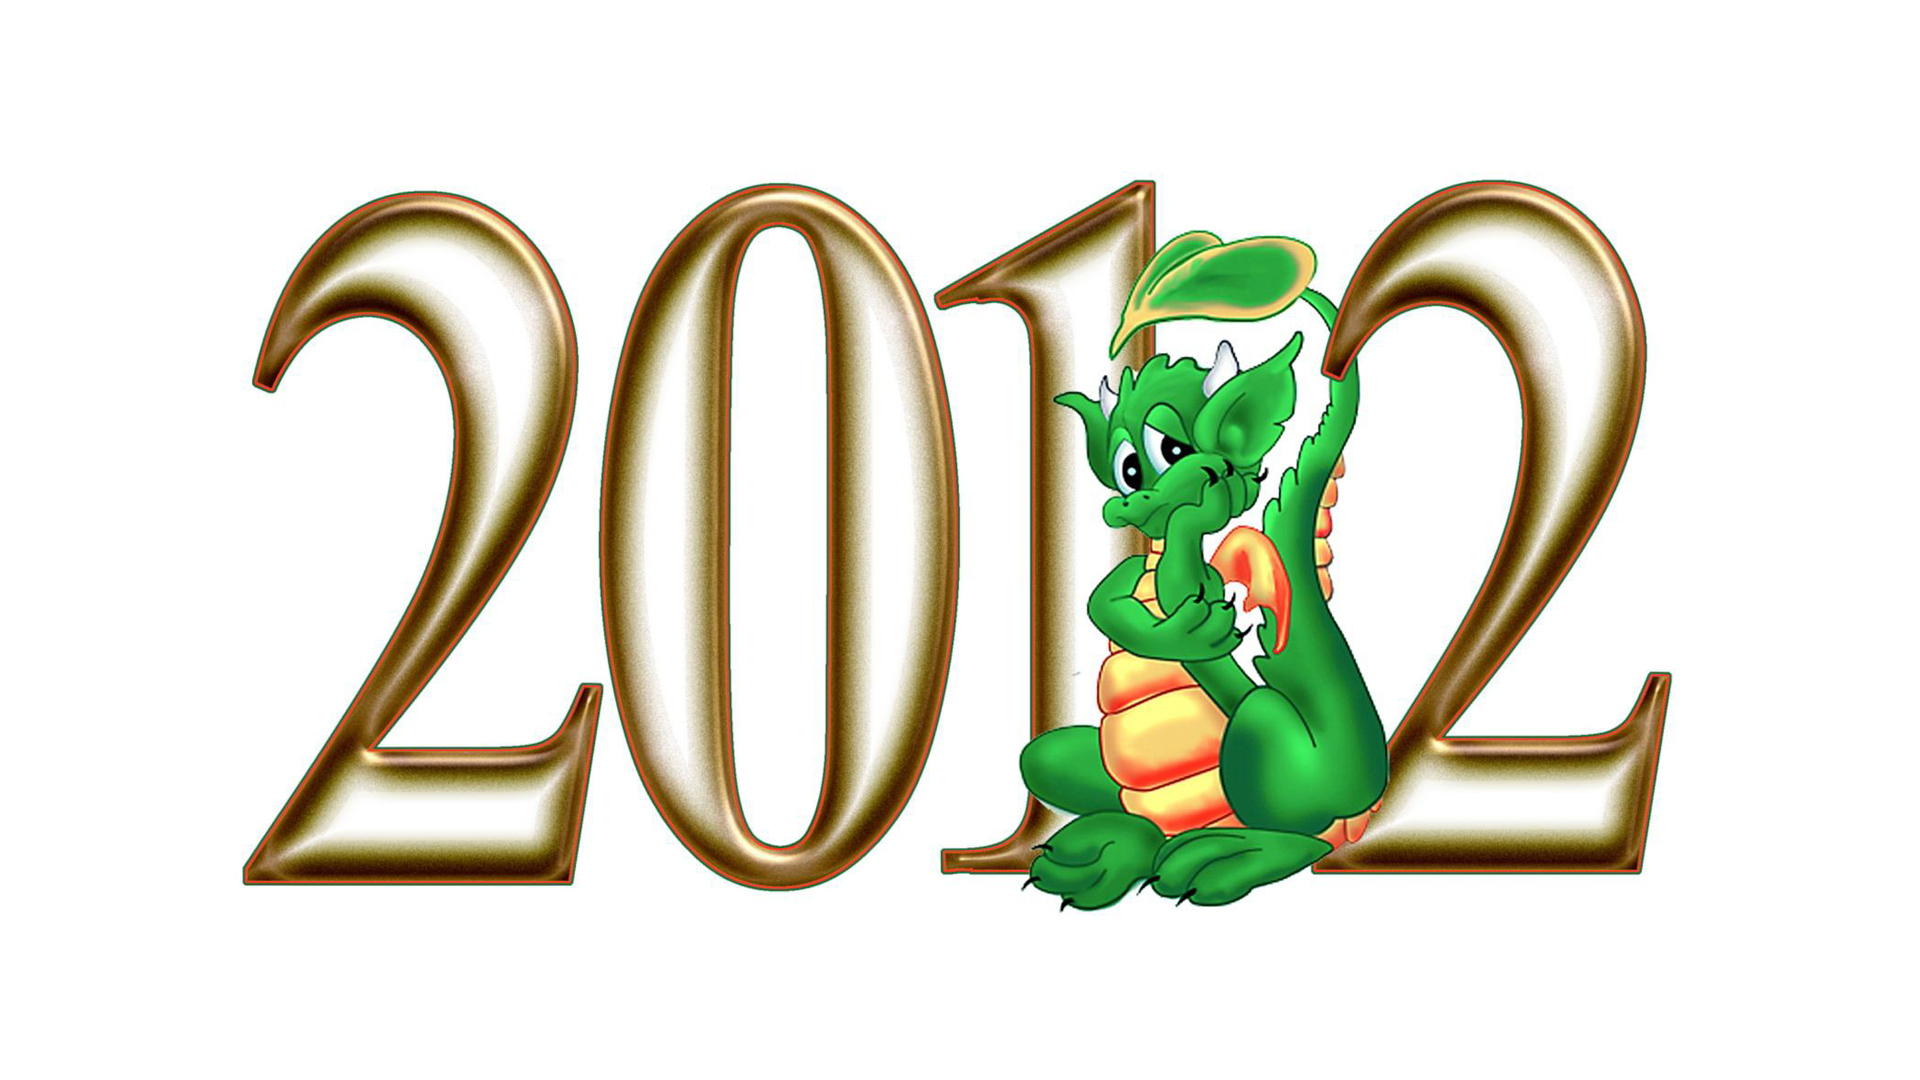 Новые Год 2012 Бесплатно